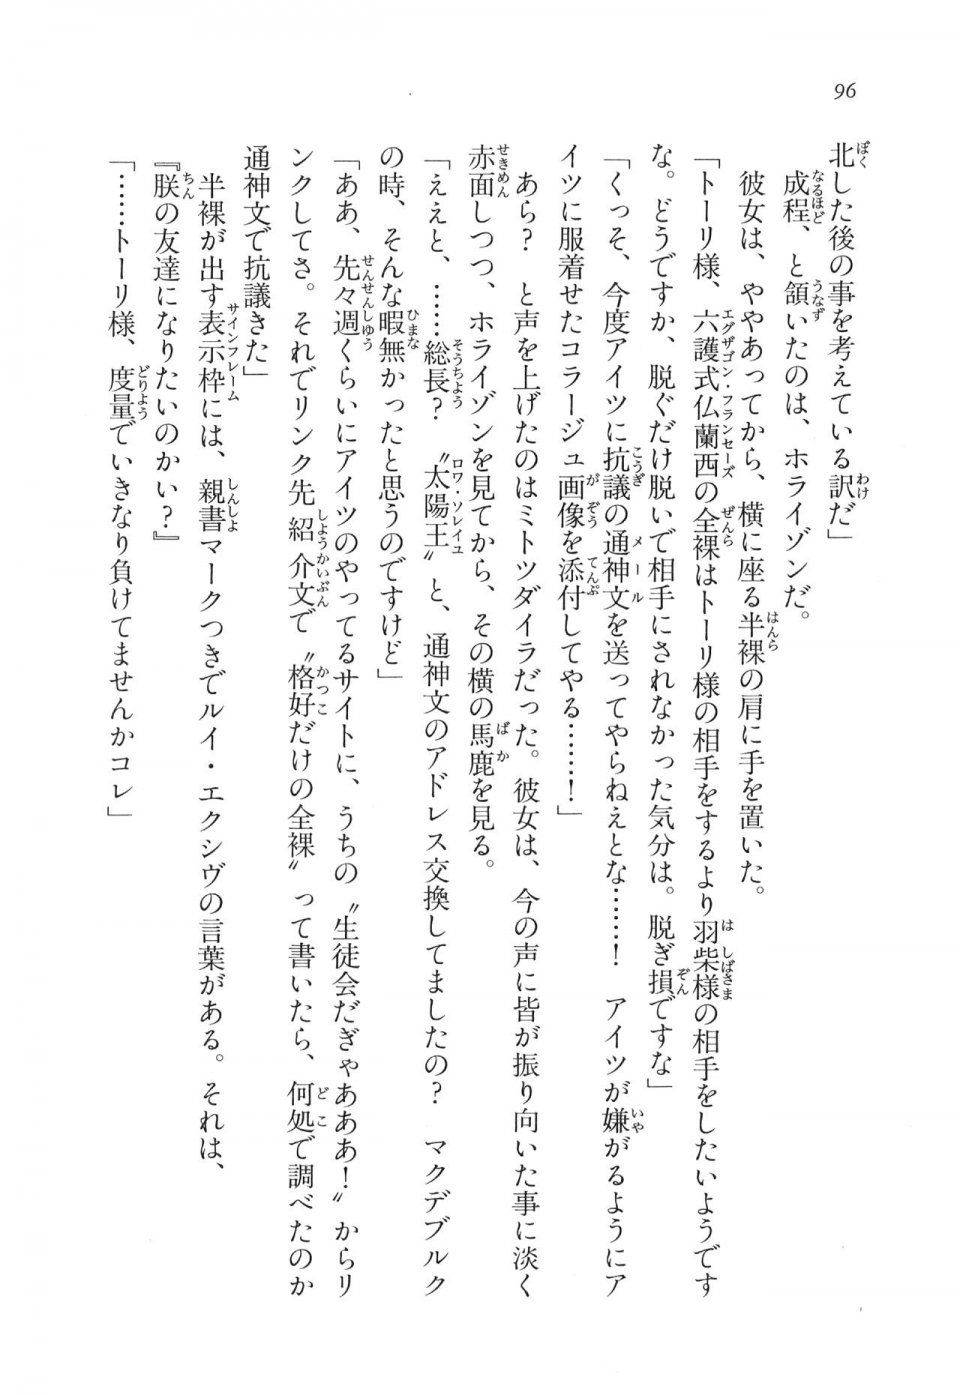 Kyoukai Senjou no Horizon LN Vol 11(5A) - Photo #96